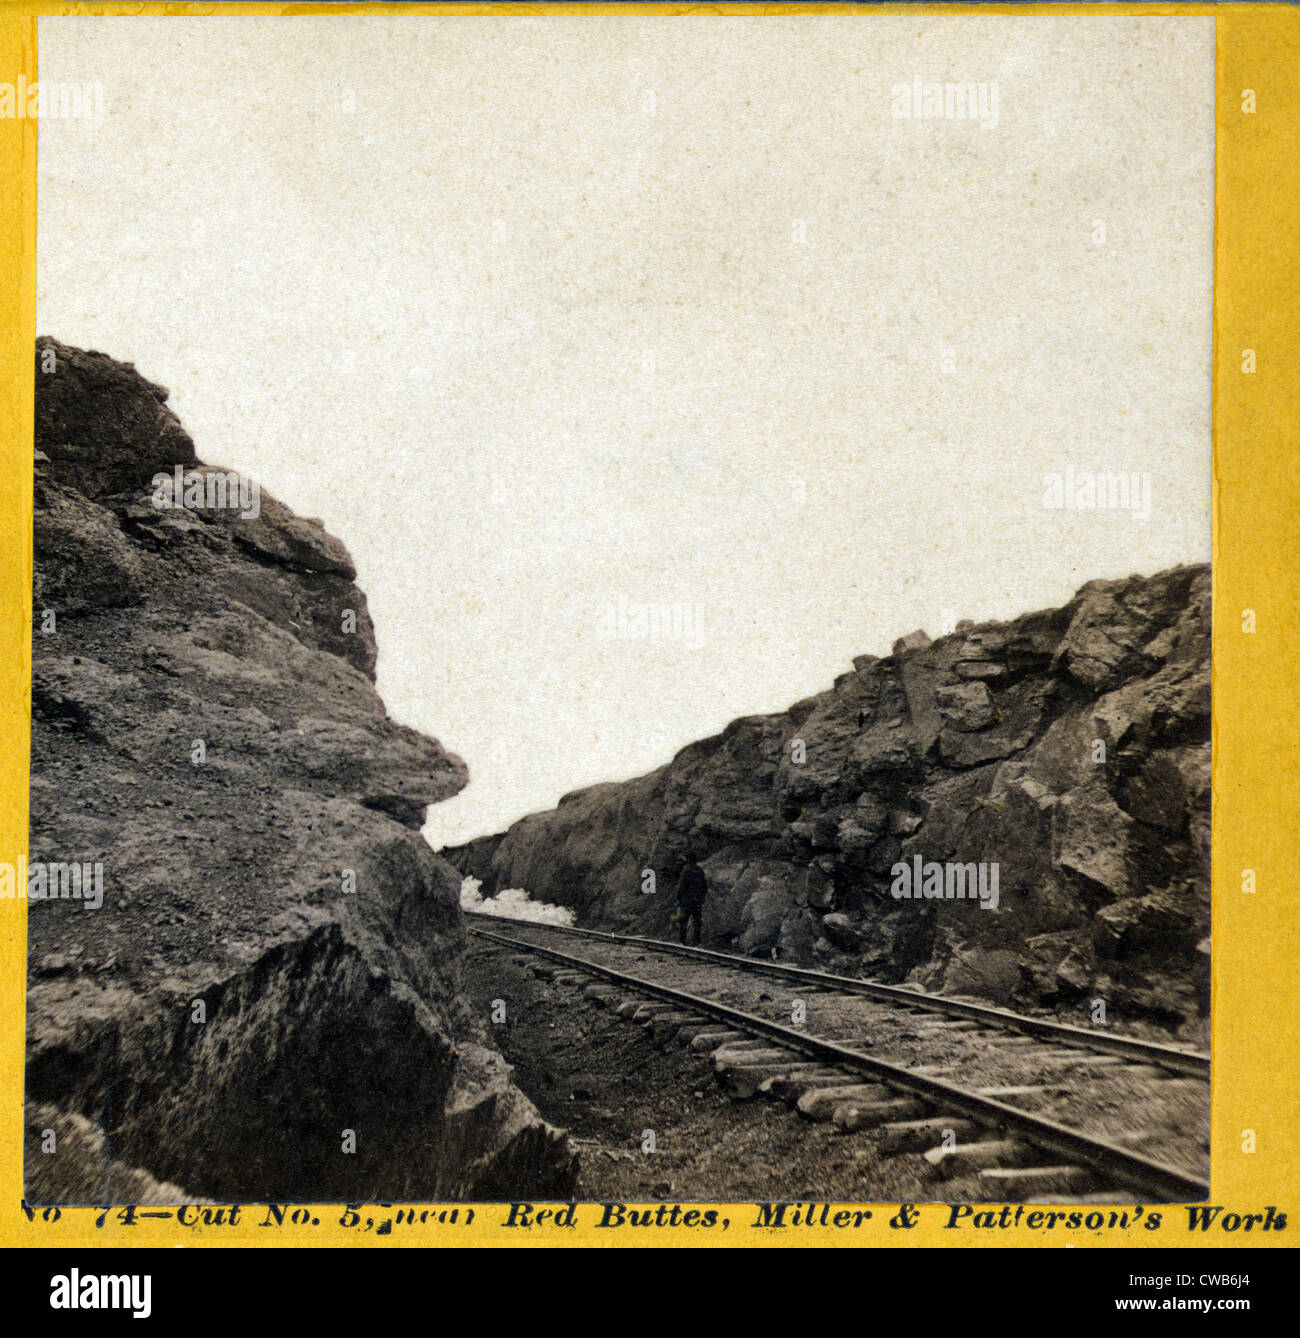 Taglio n. 5, i binari della ferrovia in esecuzione attraverso il canale tagliato nella roccia vicino al Red Buttes, albume stampa, foto da Andrew J. Russell, Foto Stock